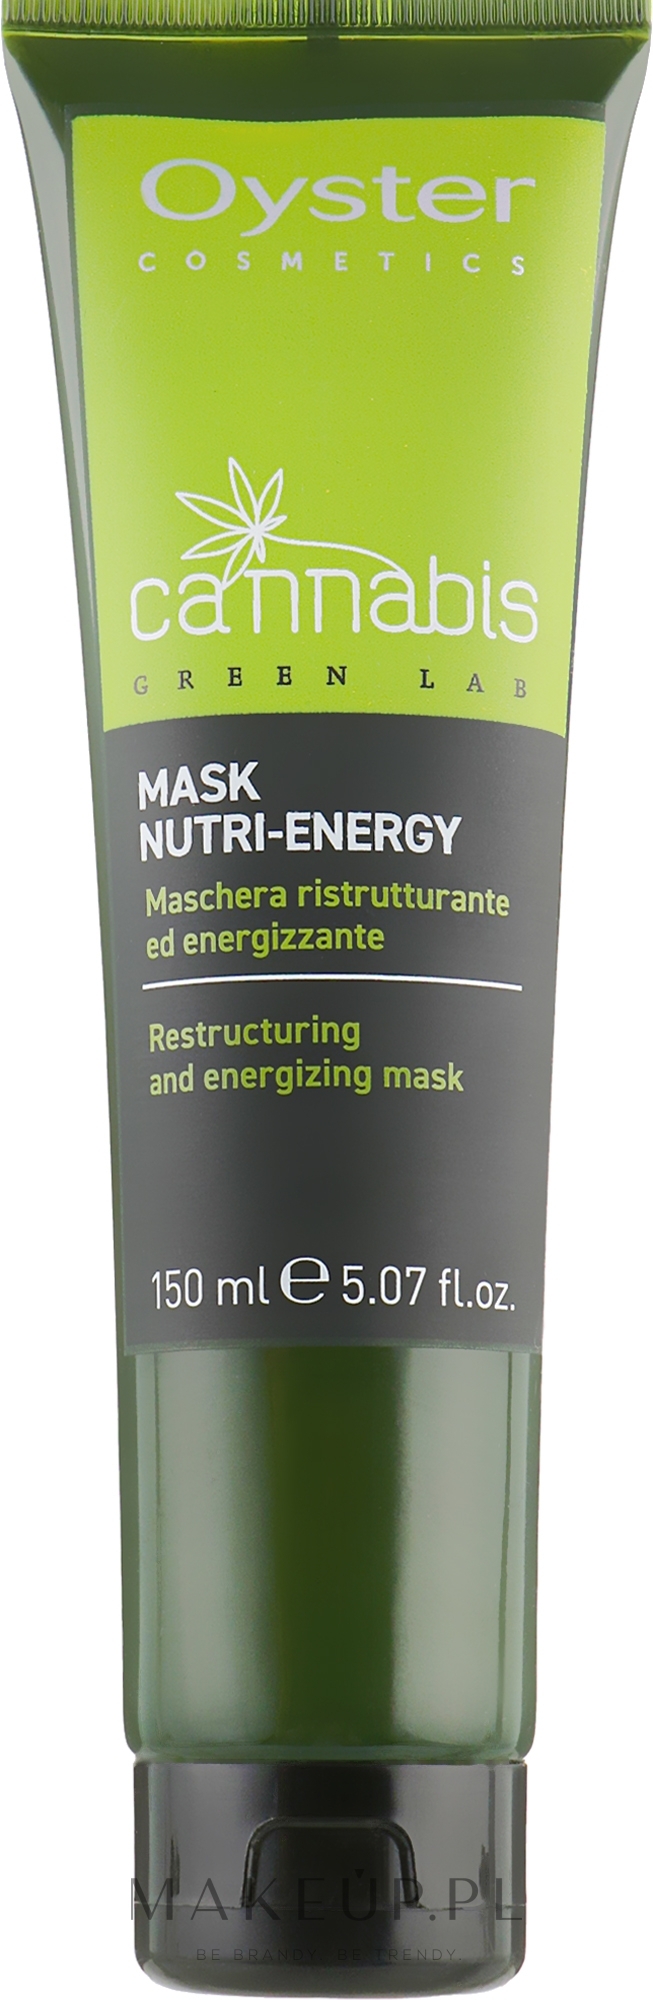 Rewitalizująca maska do włosów - Oyster Cosmetics Cannabis Green Lab Mask Nutri-Energy — Zdjęcie 150 ml